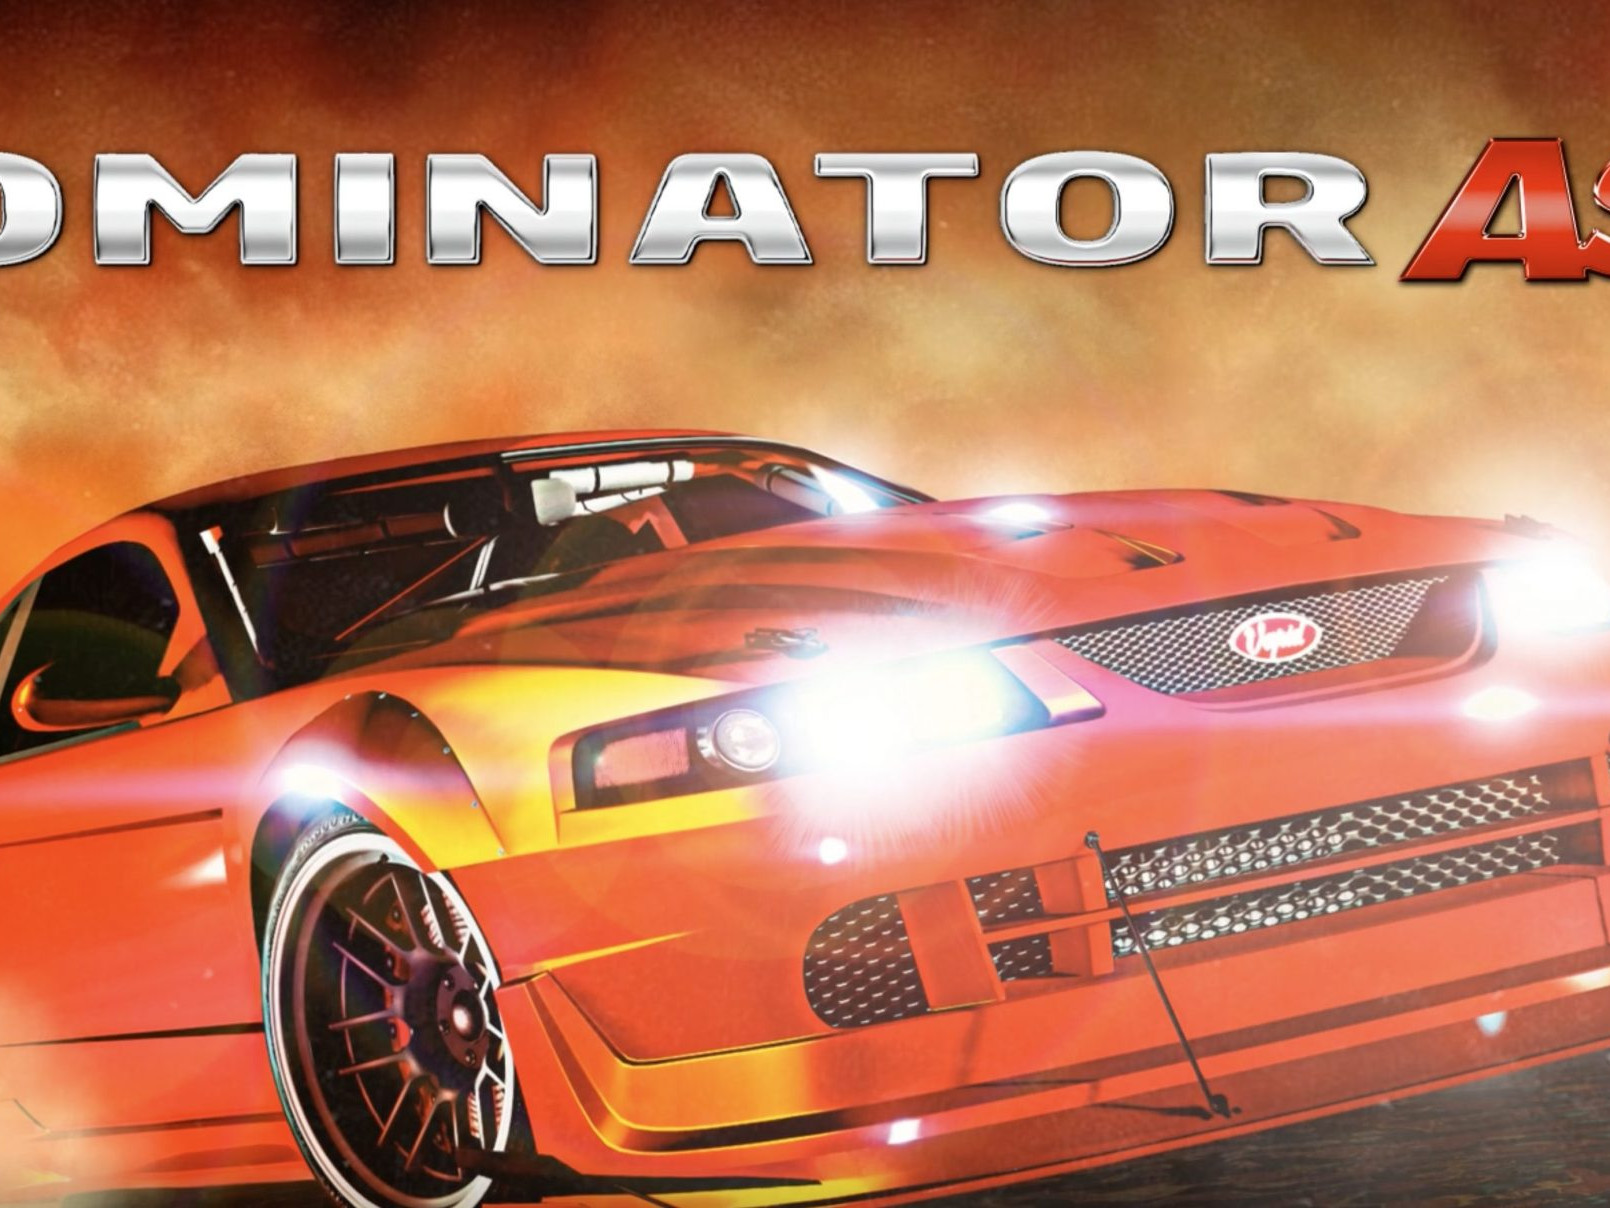 Vapid Dominator ASP disponible sur GTA Online